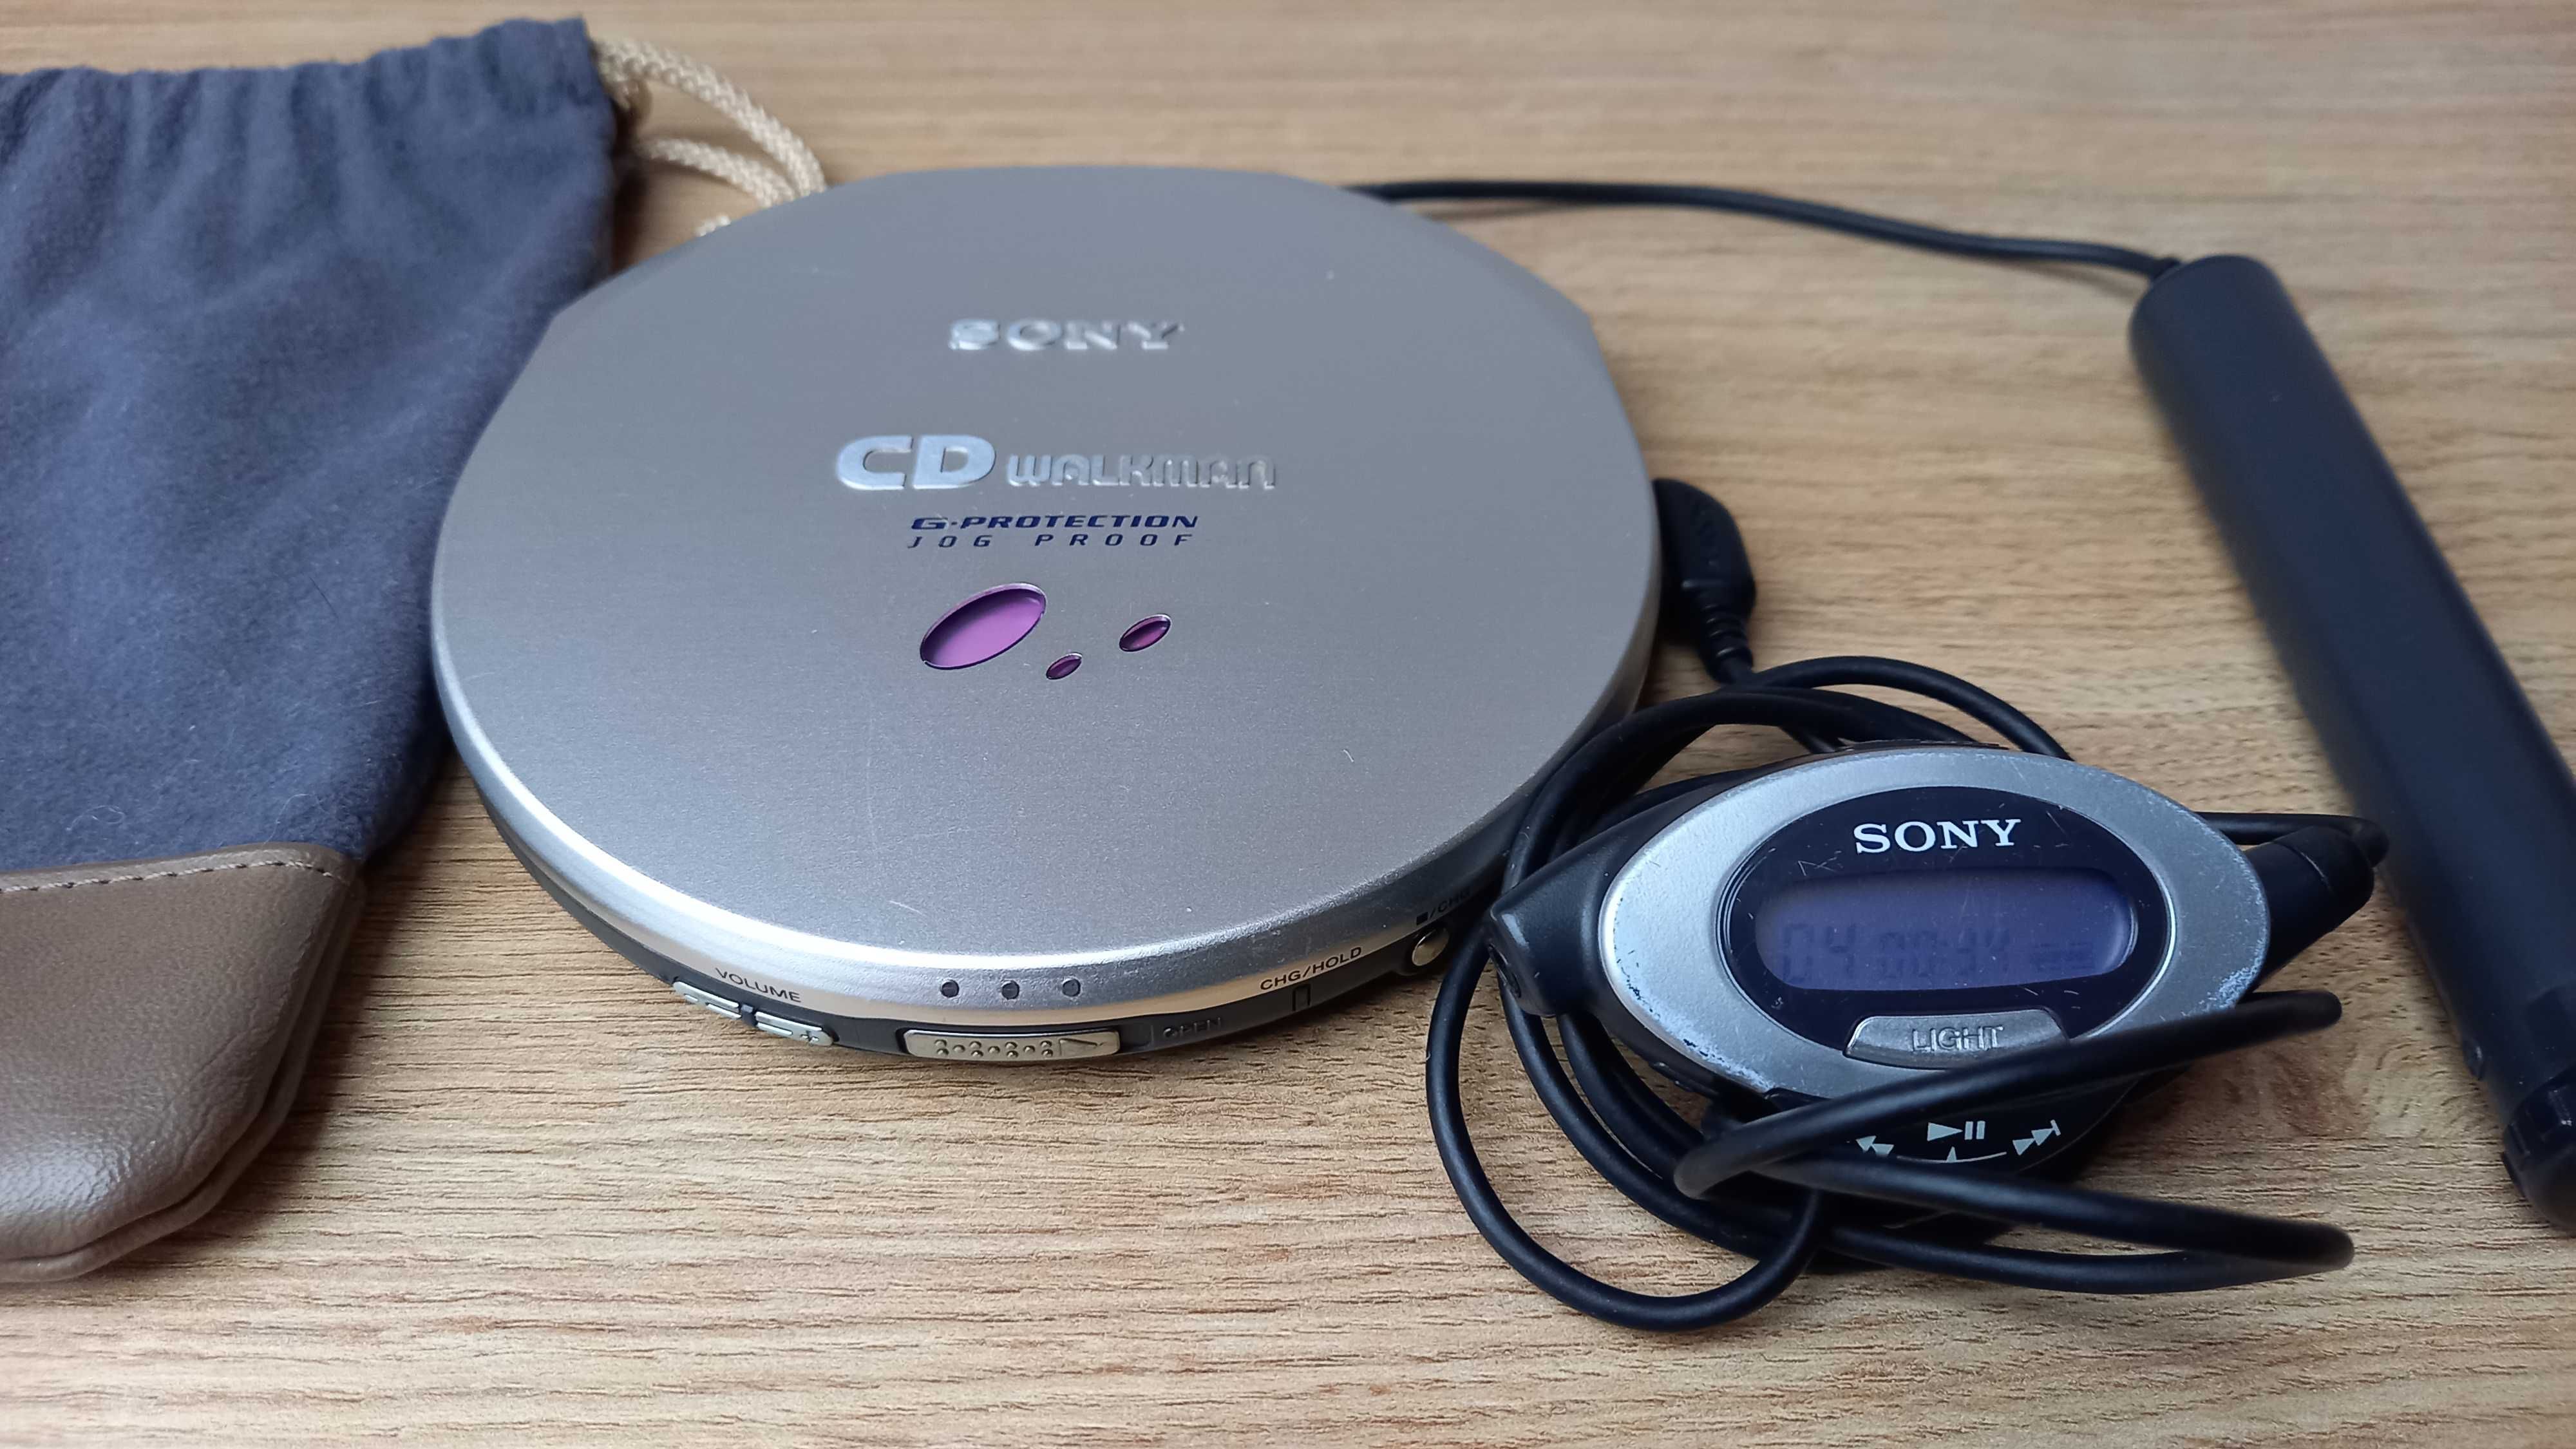 Sony D-EJ915 Discman / Walkman CD